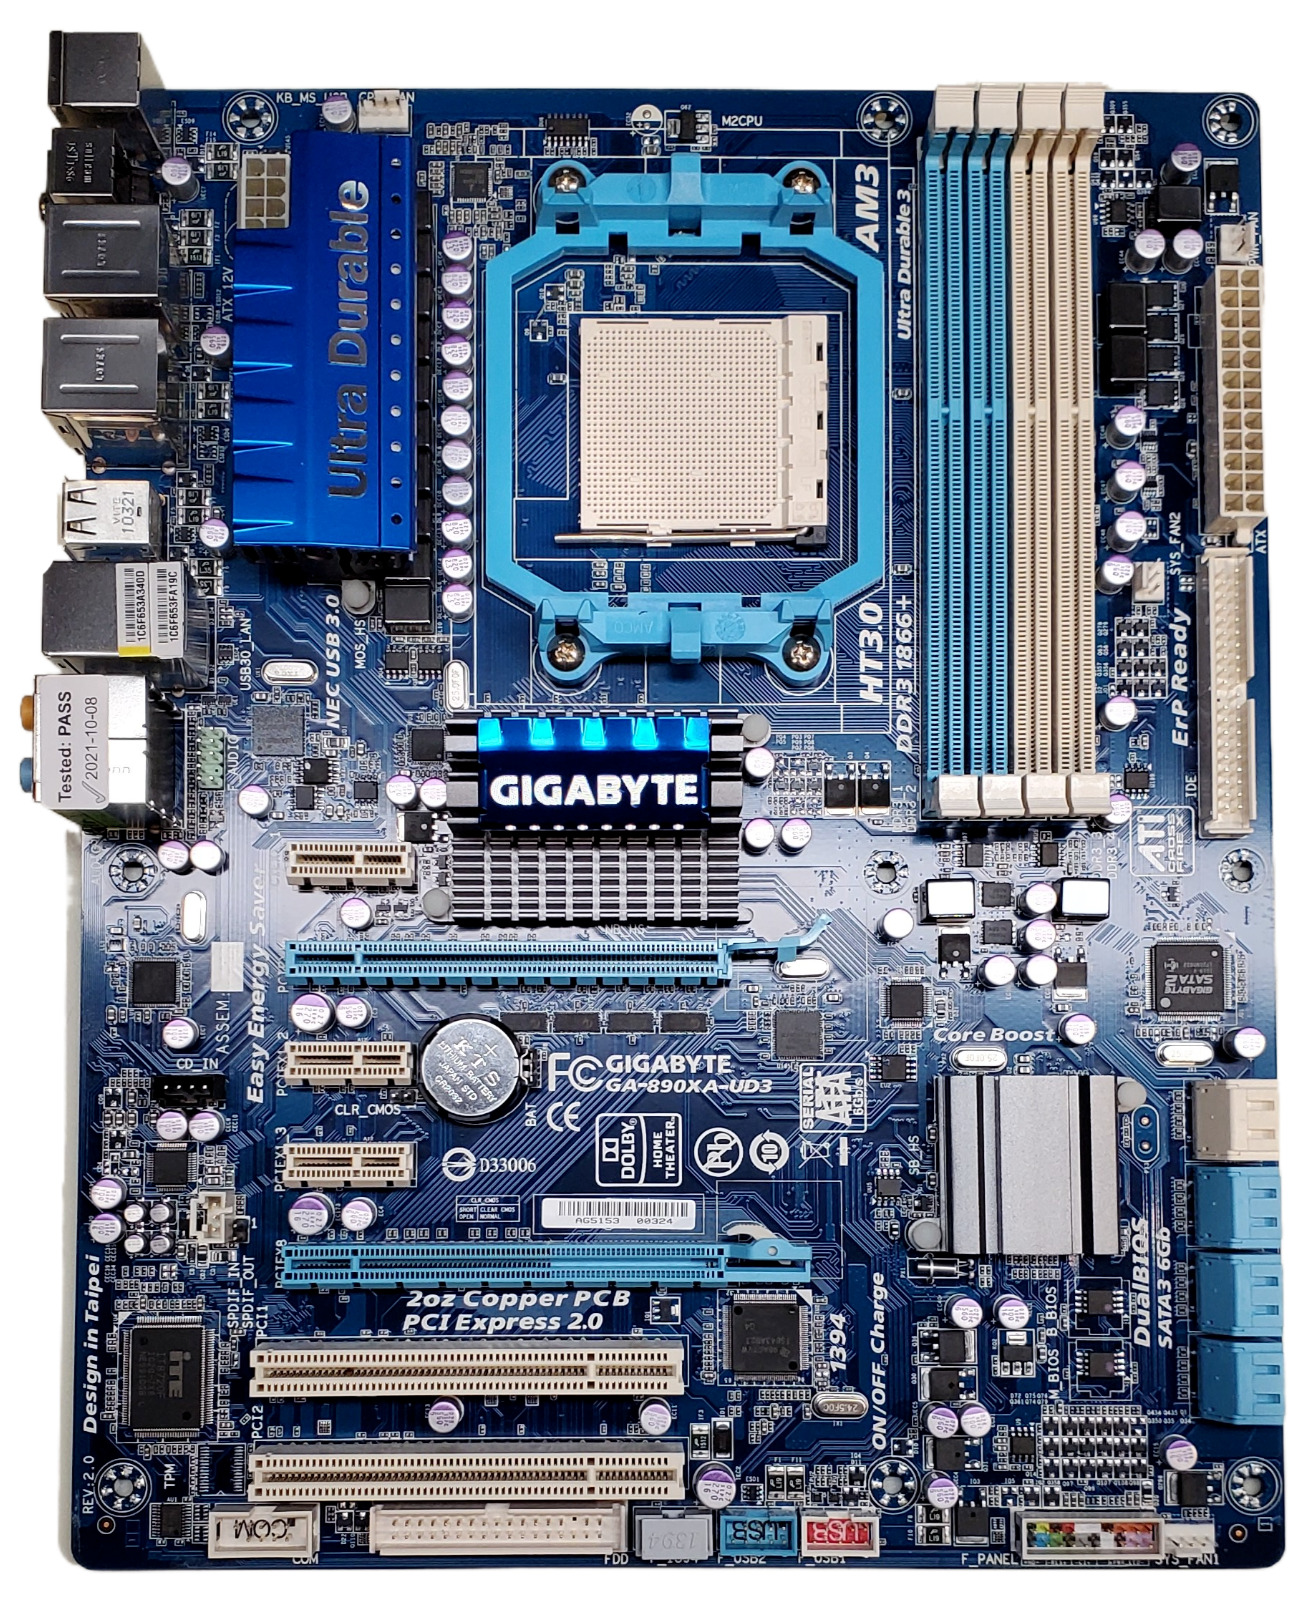 Gigabyte GA-890XA-UD3 AM3 DDR3 AMD 790X Motherboard - Tested & Working